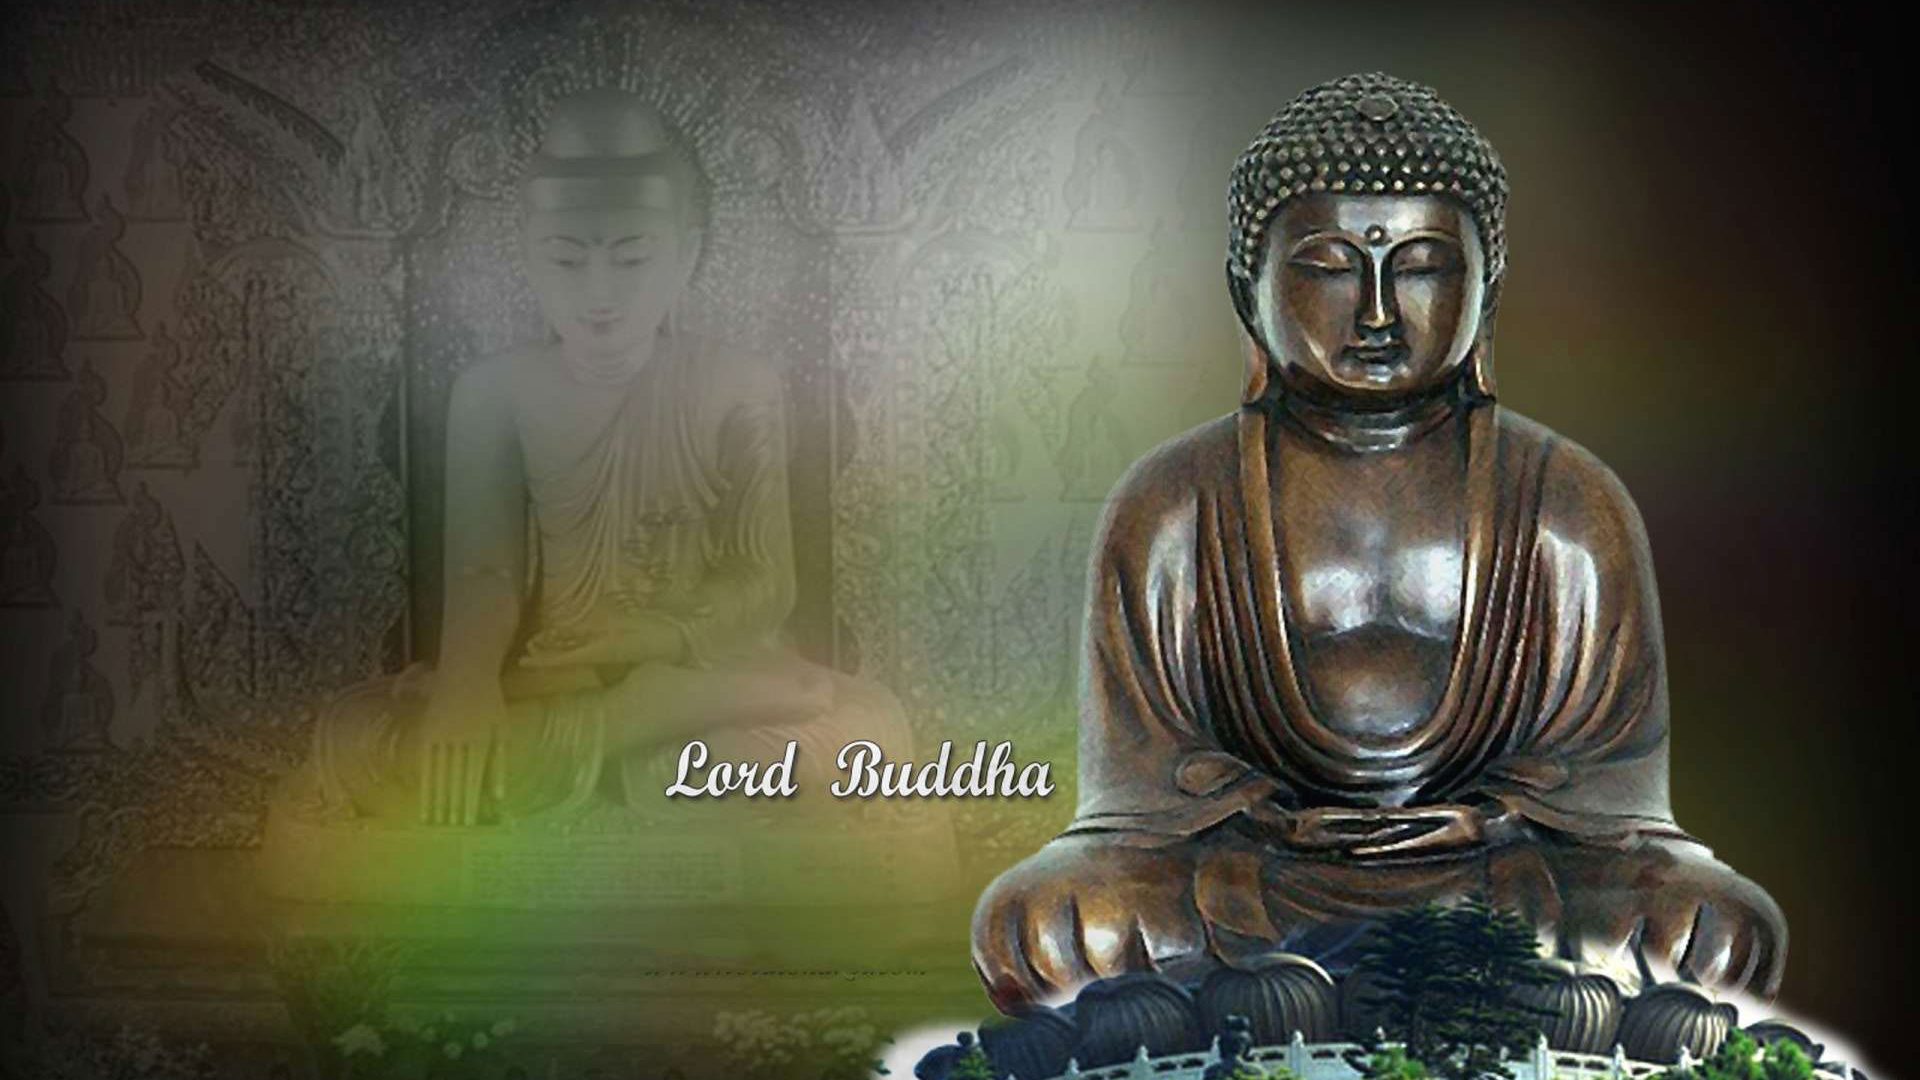 412+ Gautam Buddha Wallpaper Hd 4k Laptop Pictures - MyWeb